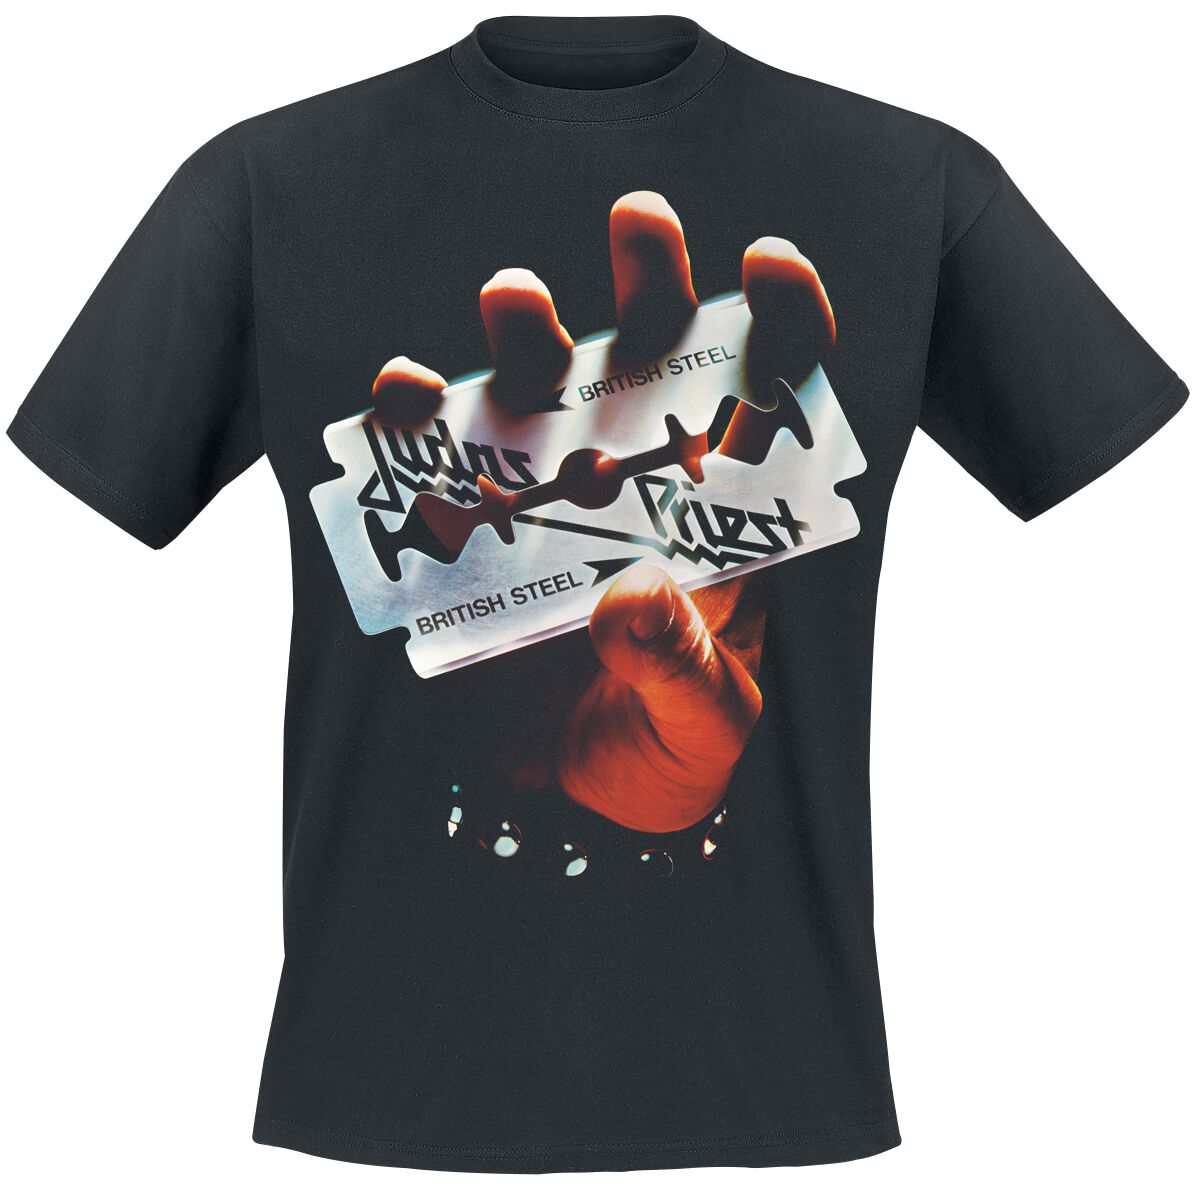 Judas Priest T-Shirt - British Steel Anniversary 2020 - S bis M - für Männer - Größe S - schwarz  - Lizenziertes Merchandise!